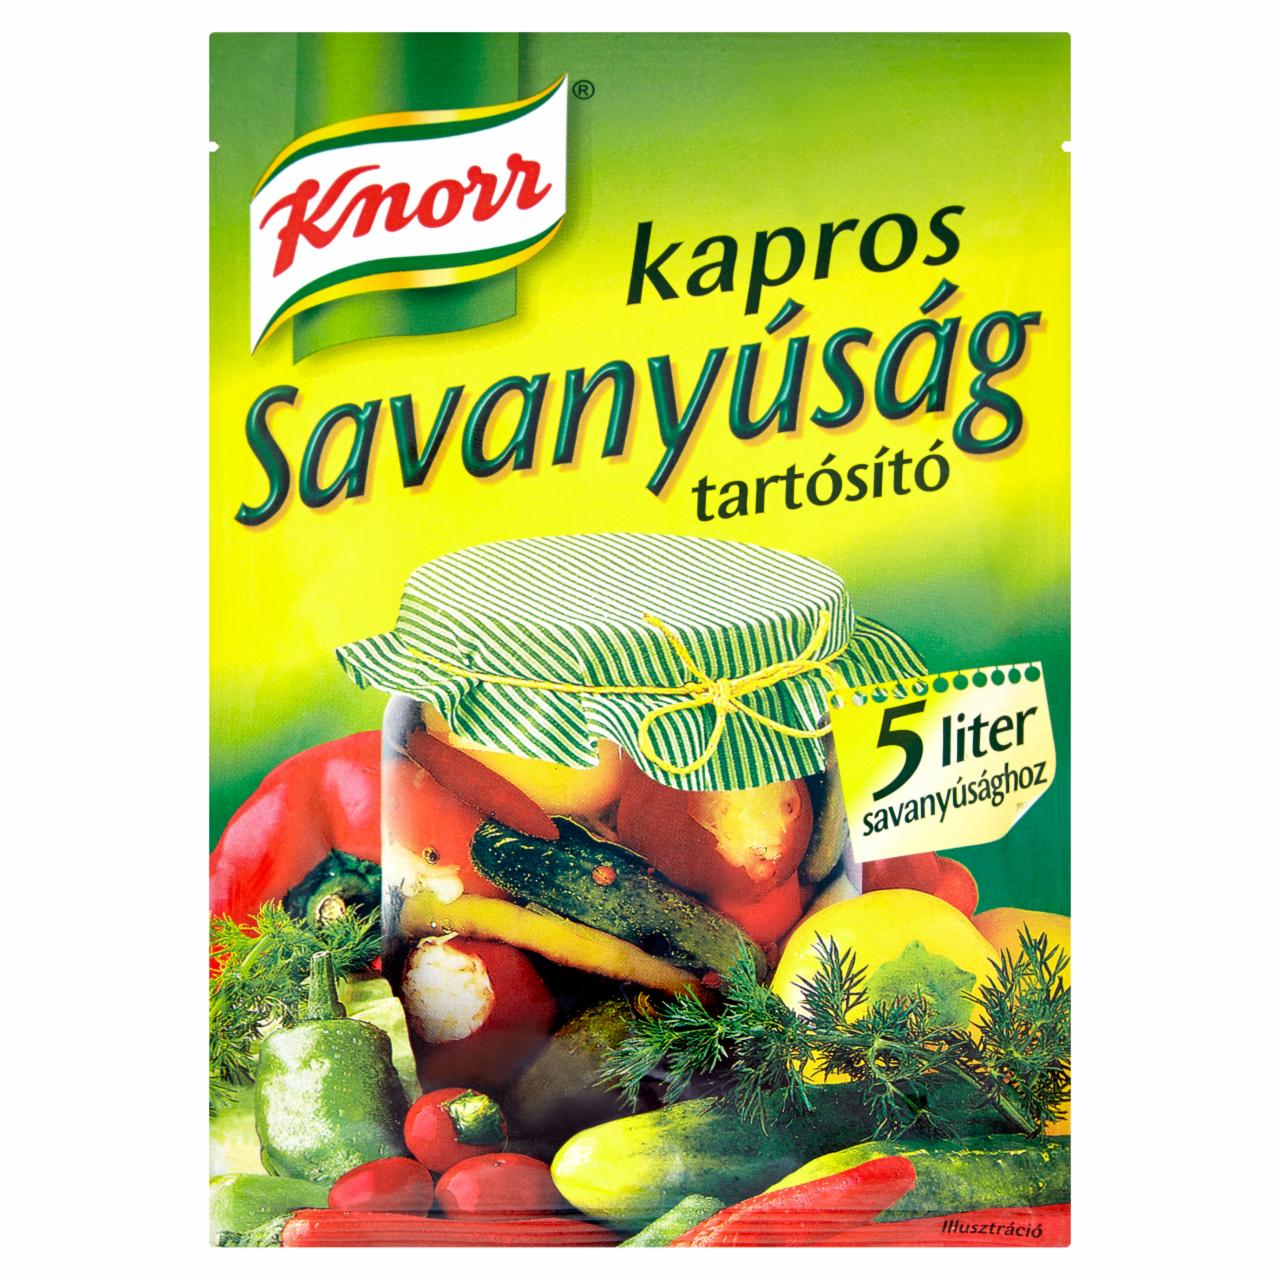 Képek - Knorr kapros savanyúság tartósító 100 g